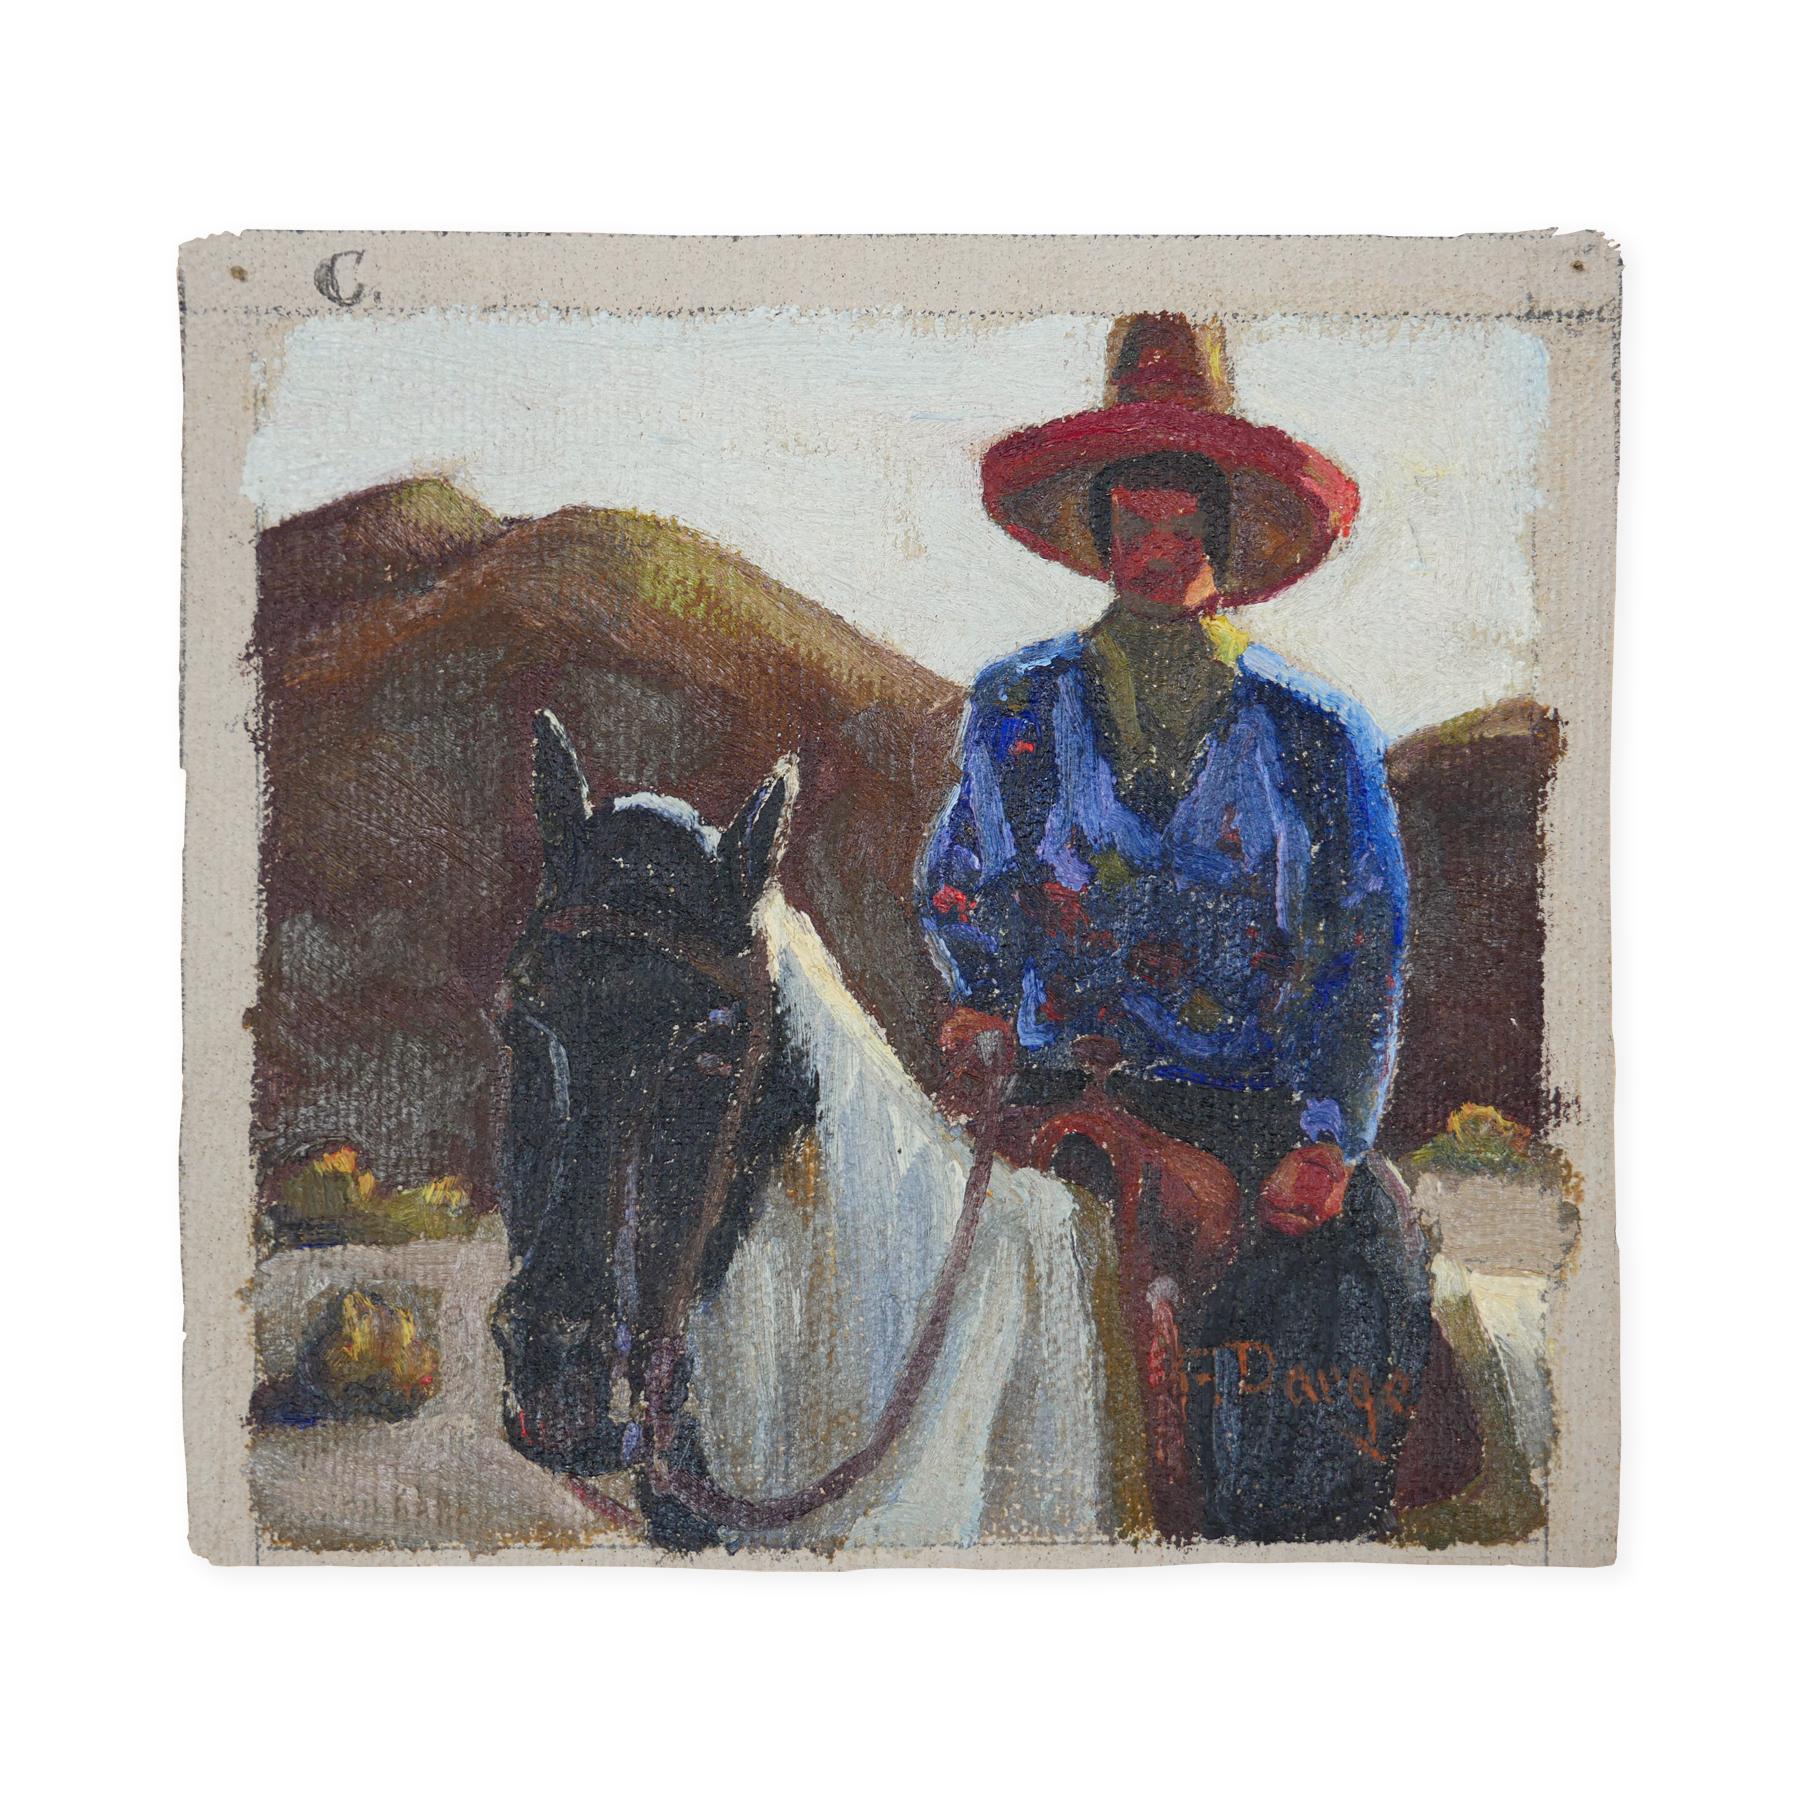 Abstrakt-impressionistisches Gemälde eines Cowboys auf einem Pferd in Blau, Rot und Braun – Painting von Fred Darge